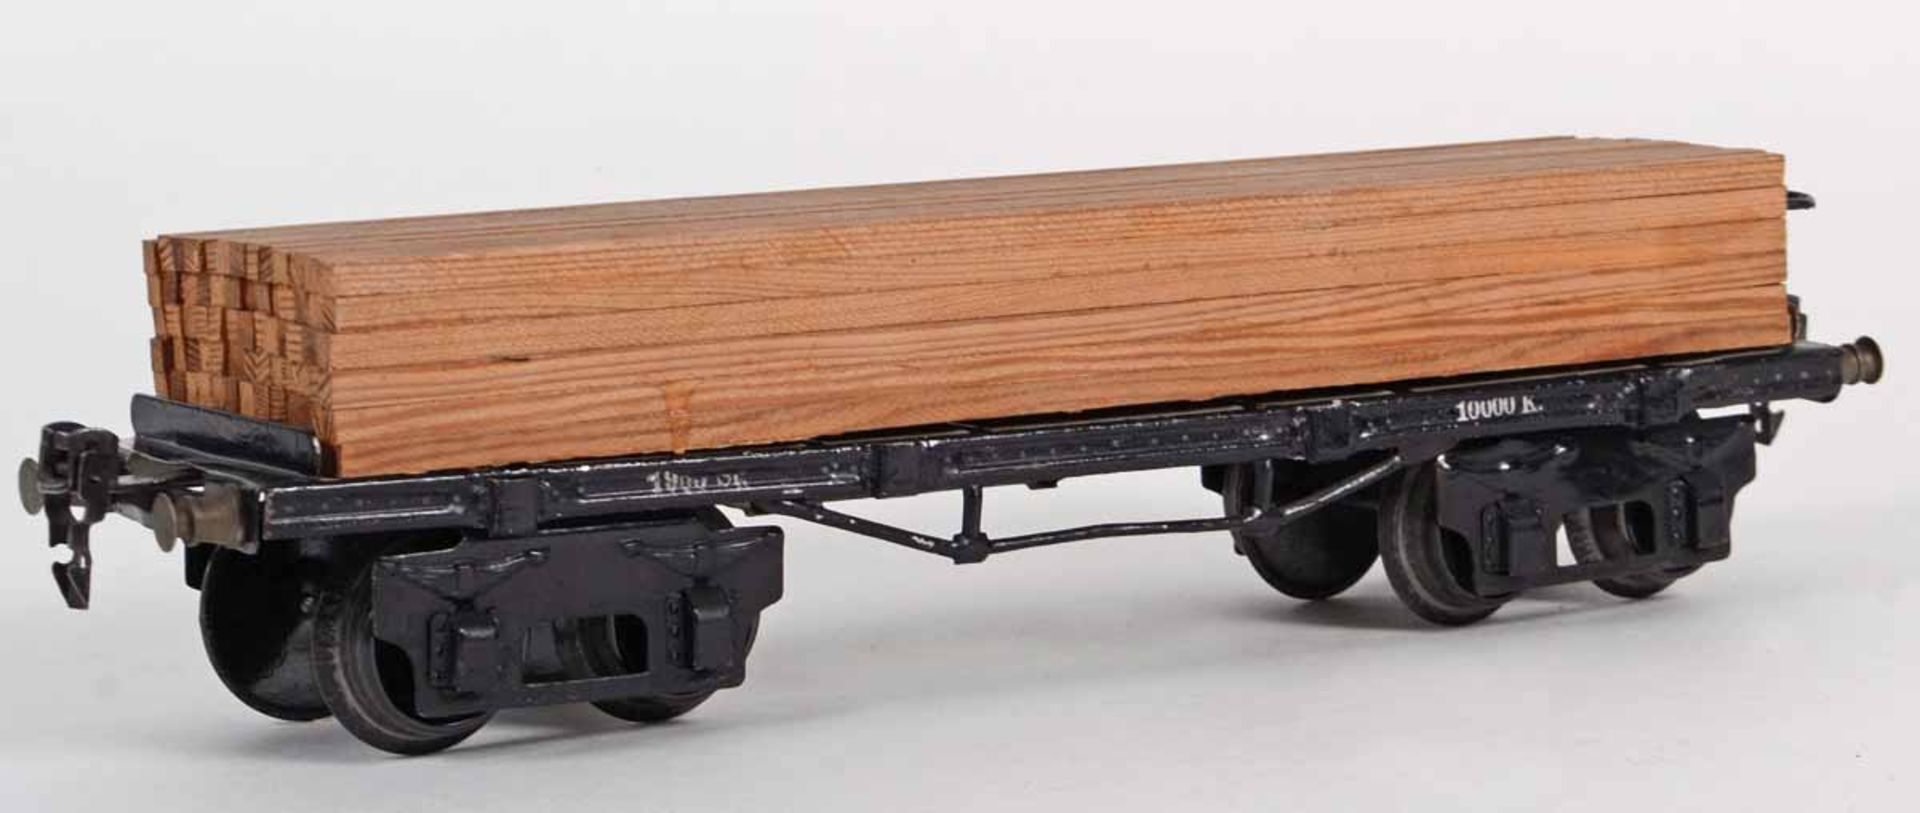 Güterwagen Hersteller: Märklin, Spur 1, Doppelachser mit Langholzladung, gute Erhaltung, L ca. 31, - Bild 2 aus 3